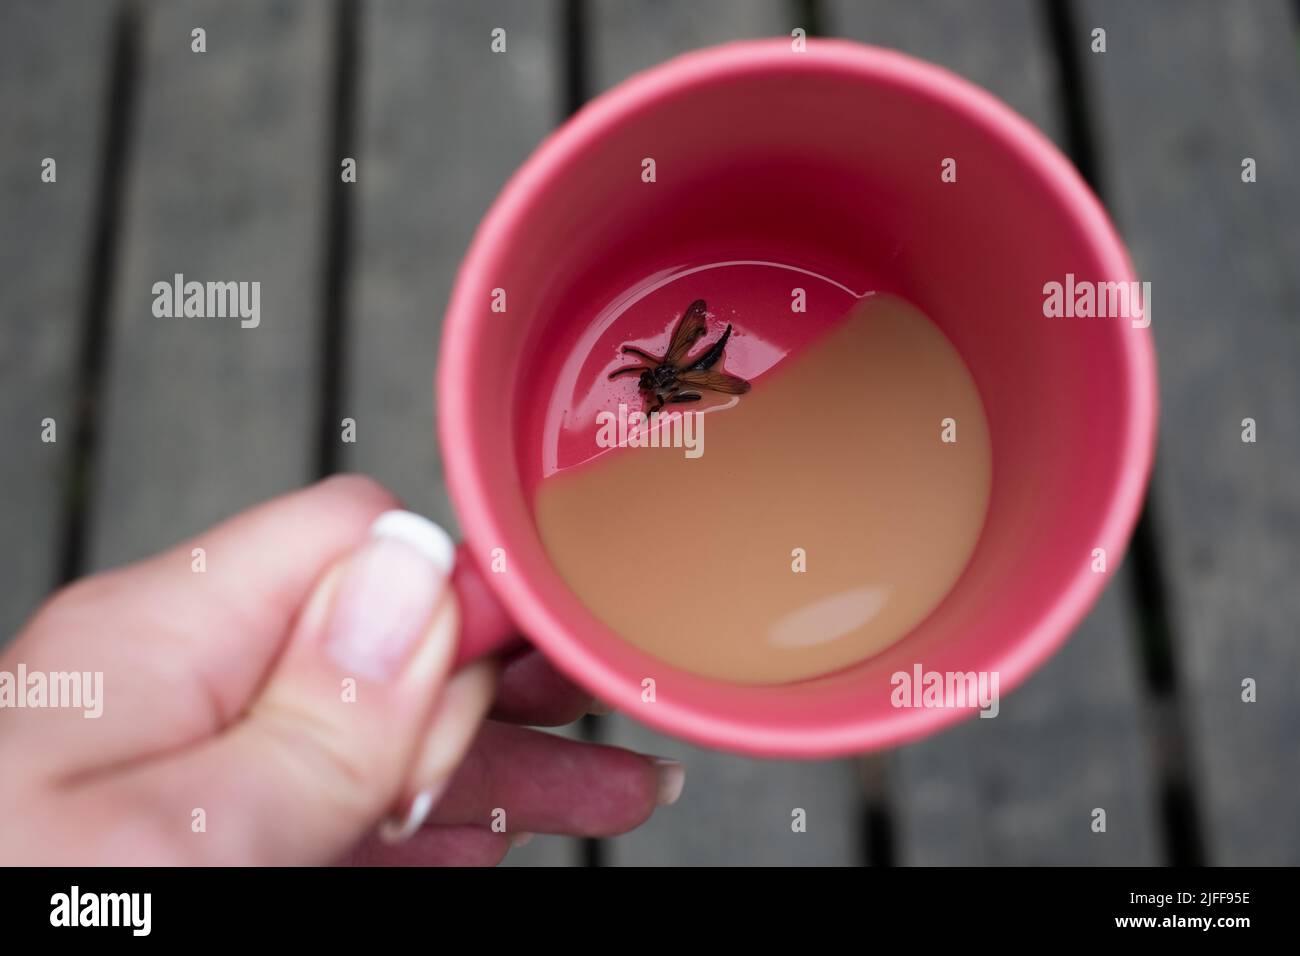 WASP nuotare in un drink. Pericolo di deglutizione da parte del WASP. Bug nella tazza di caffè. Foto Stock